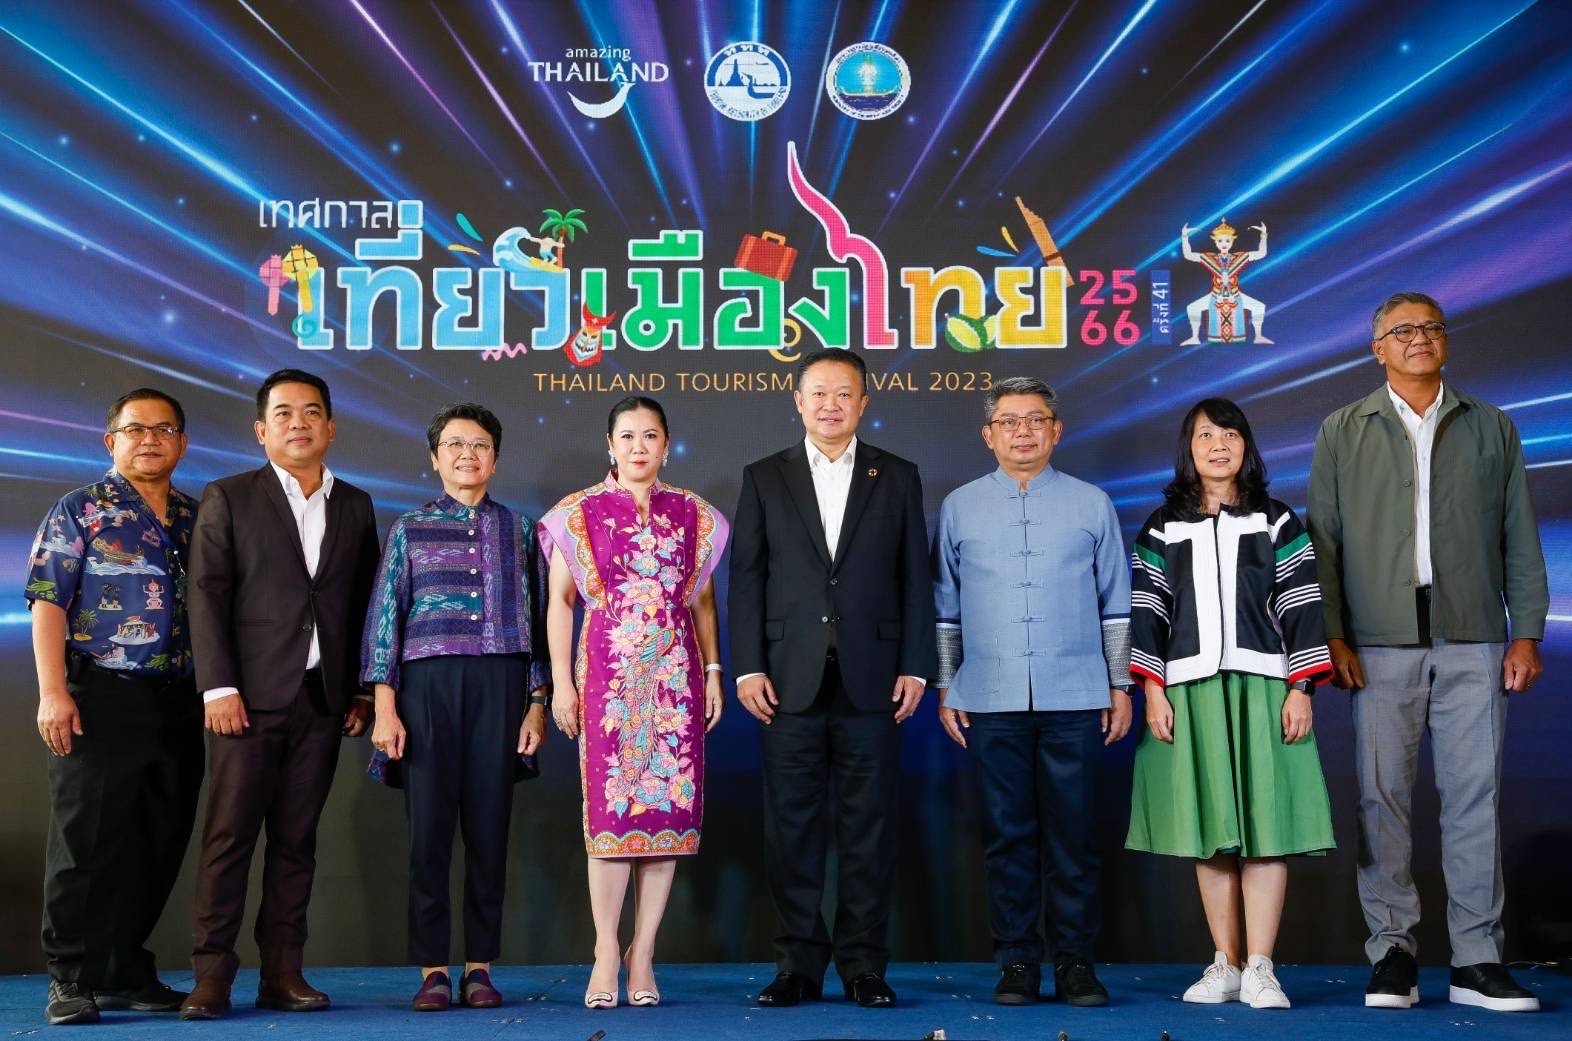 การท่องเที่ยวแห่งประเทศไทย (ททท.) เตรียมจัดงาน “เทศกาลเที่ยวเมืองไทย ครั้งที่ 41 ประจำปี 2566” (TTF2023) ระหว่างวันที่ 2-6 ส.ค. 66 ณ ฮอลล์ 5-8 ชั้น LG ศูนย์การประชุมแห่งชาติสิริกิติ์